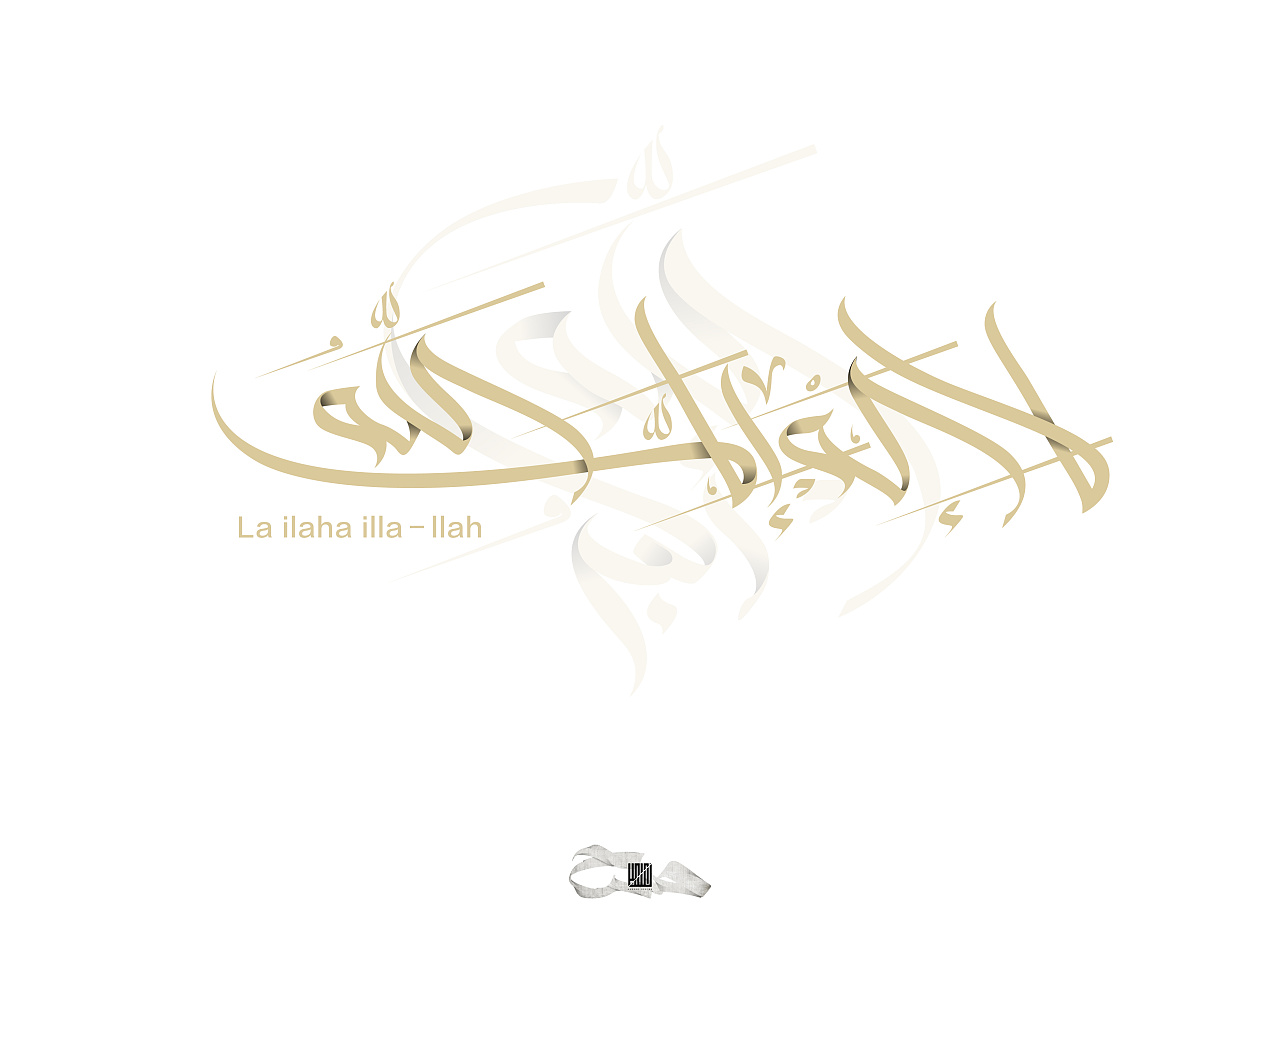 美丽的阿拉伯语书法 - 阿拉伯语 | Arabic | العربية - 声同小语种论坛 - Powered by phpwind